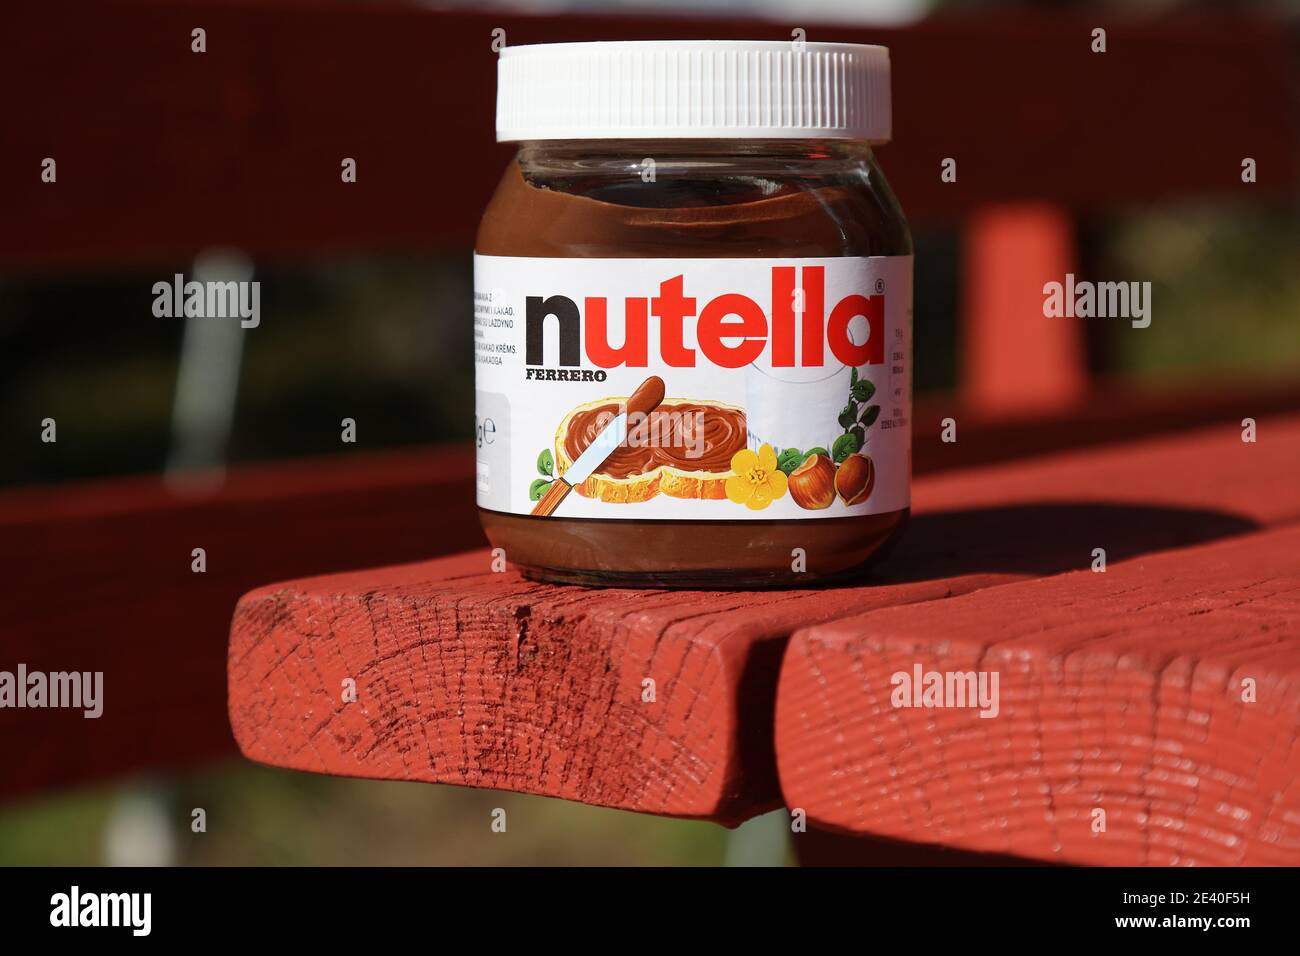 BERGEN, NORVÈGE - 22 JUILLET 2020 : un pot de noisettes au chocolat Nutella  dans un cadre de pique-nique en Norvège. Nutella est fabriqué par Ferrero  Photo Stock - Alamy